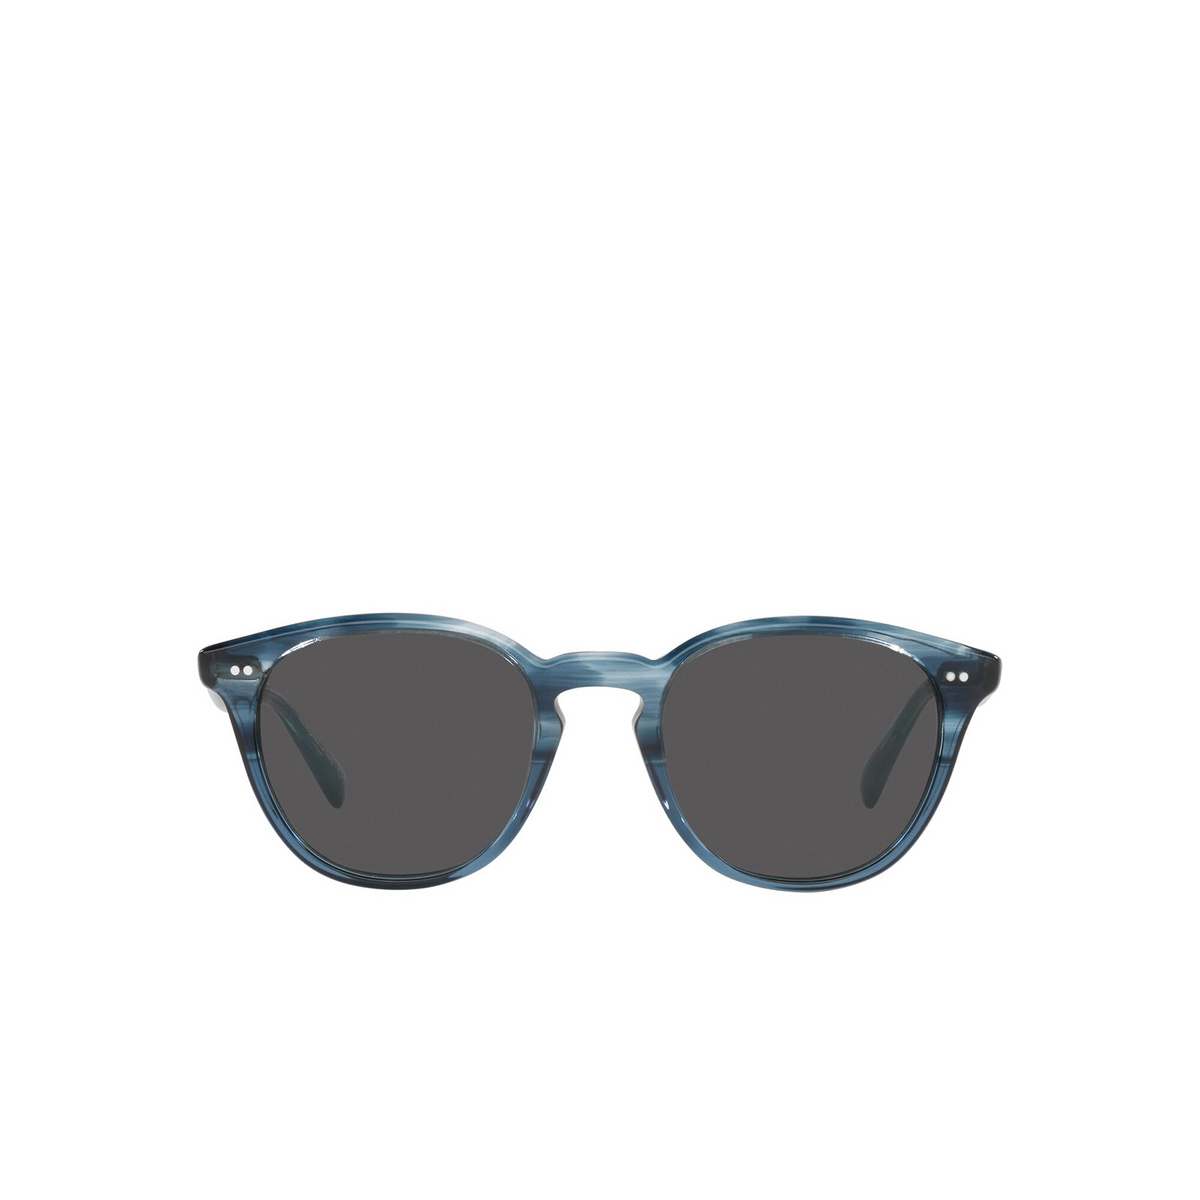 Oliver Peoples® Square Sunglasses: Desmon Sun OV5454SU color Dark Blue Vsb 1730R5 - front view.